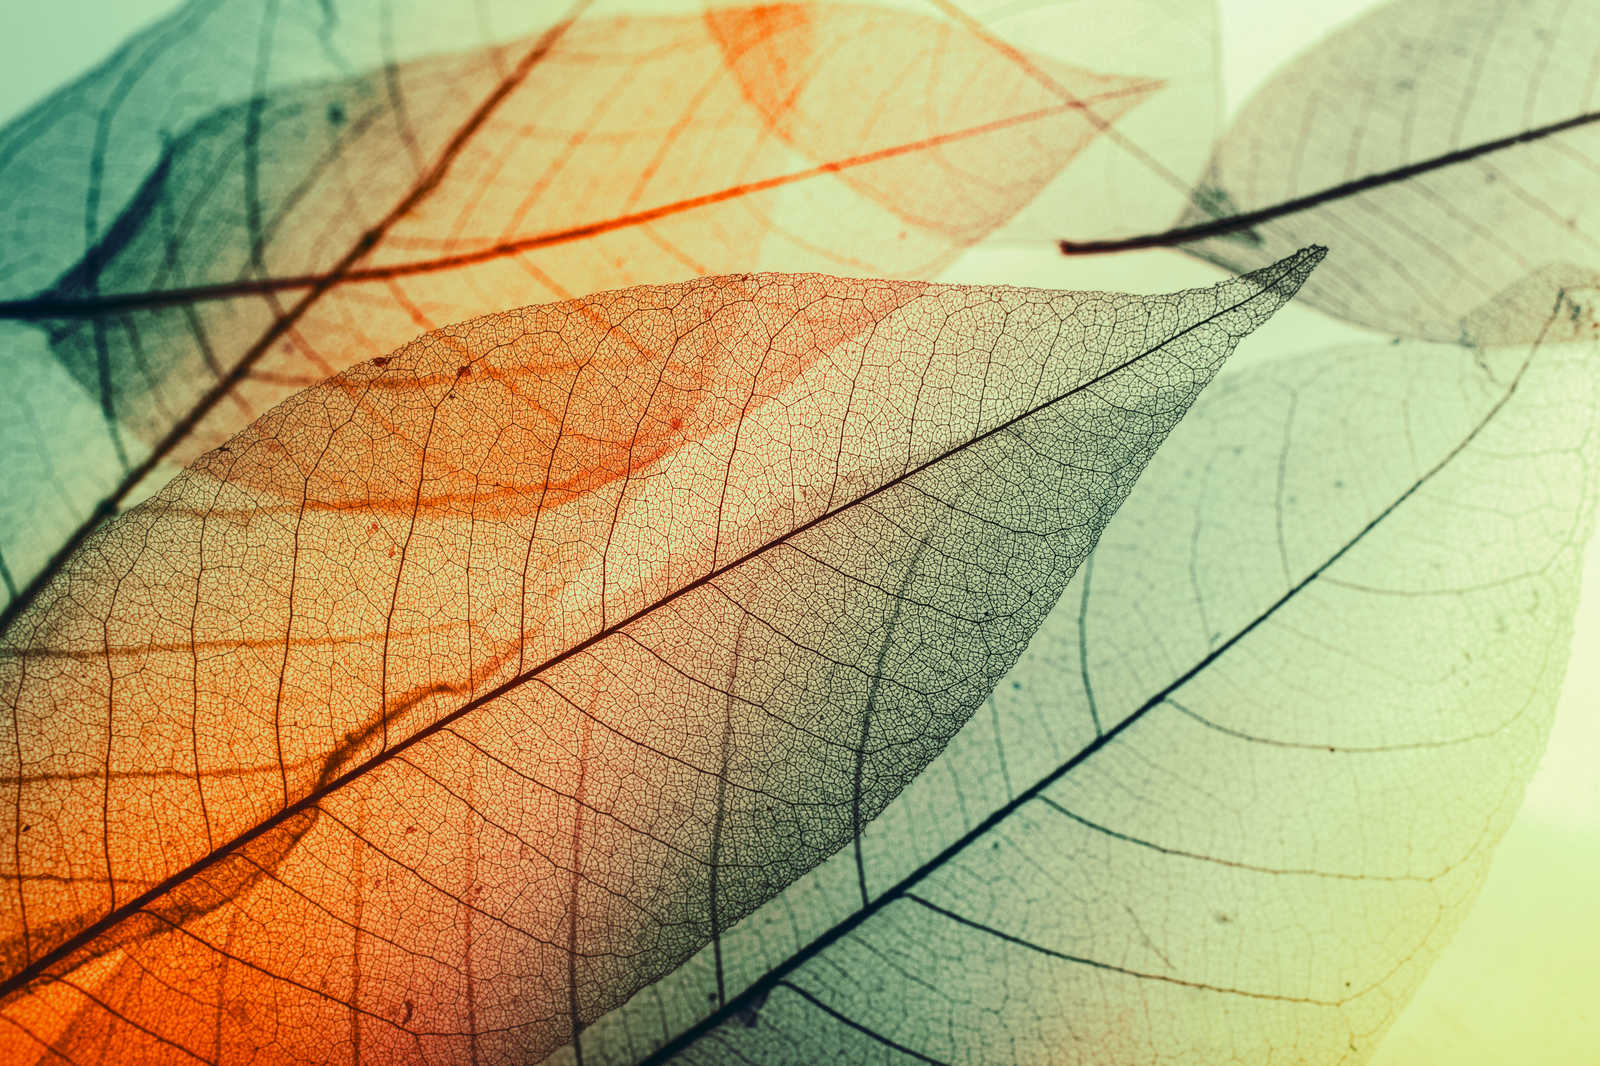             Tela con disegno di foglie - 0,90 m x 0,60 m
        